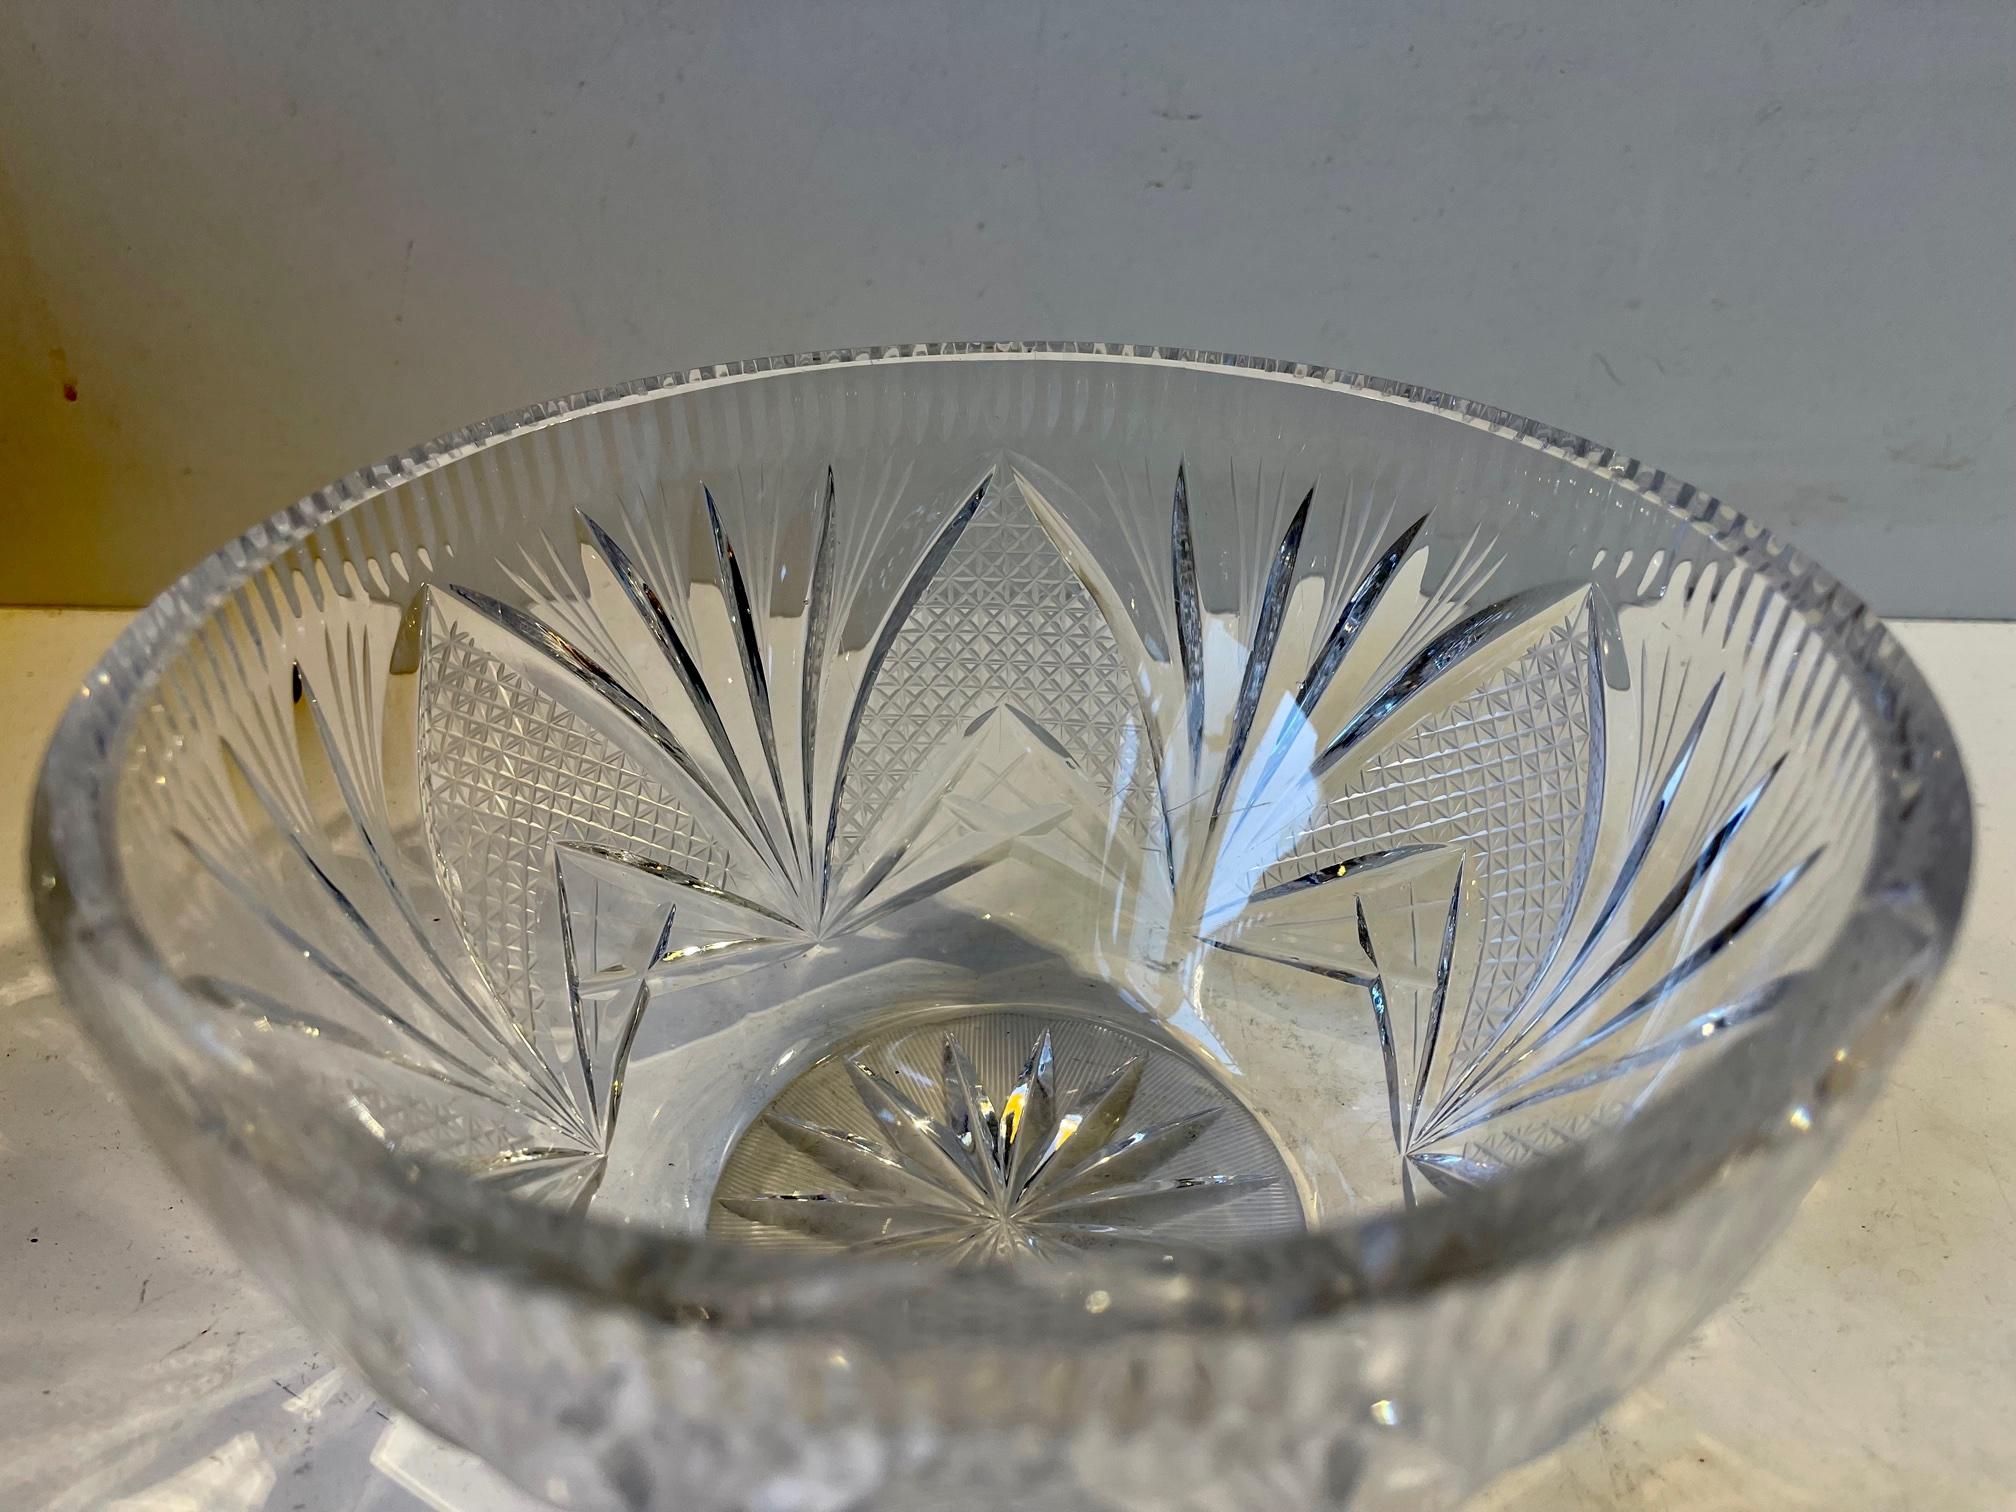 Un bol en cristal de plomb finement taillé et gravé. Décoré d'impressions florales. Fabriqué en Scandinavie, probablement par Orrefors, vers 1930-40. Mesures : P : 18, H : 9,5 cm.